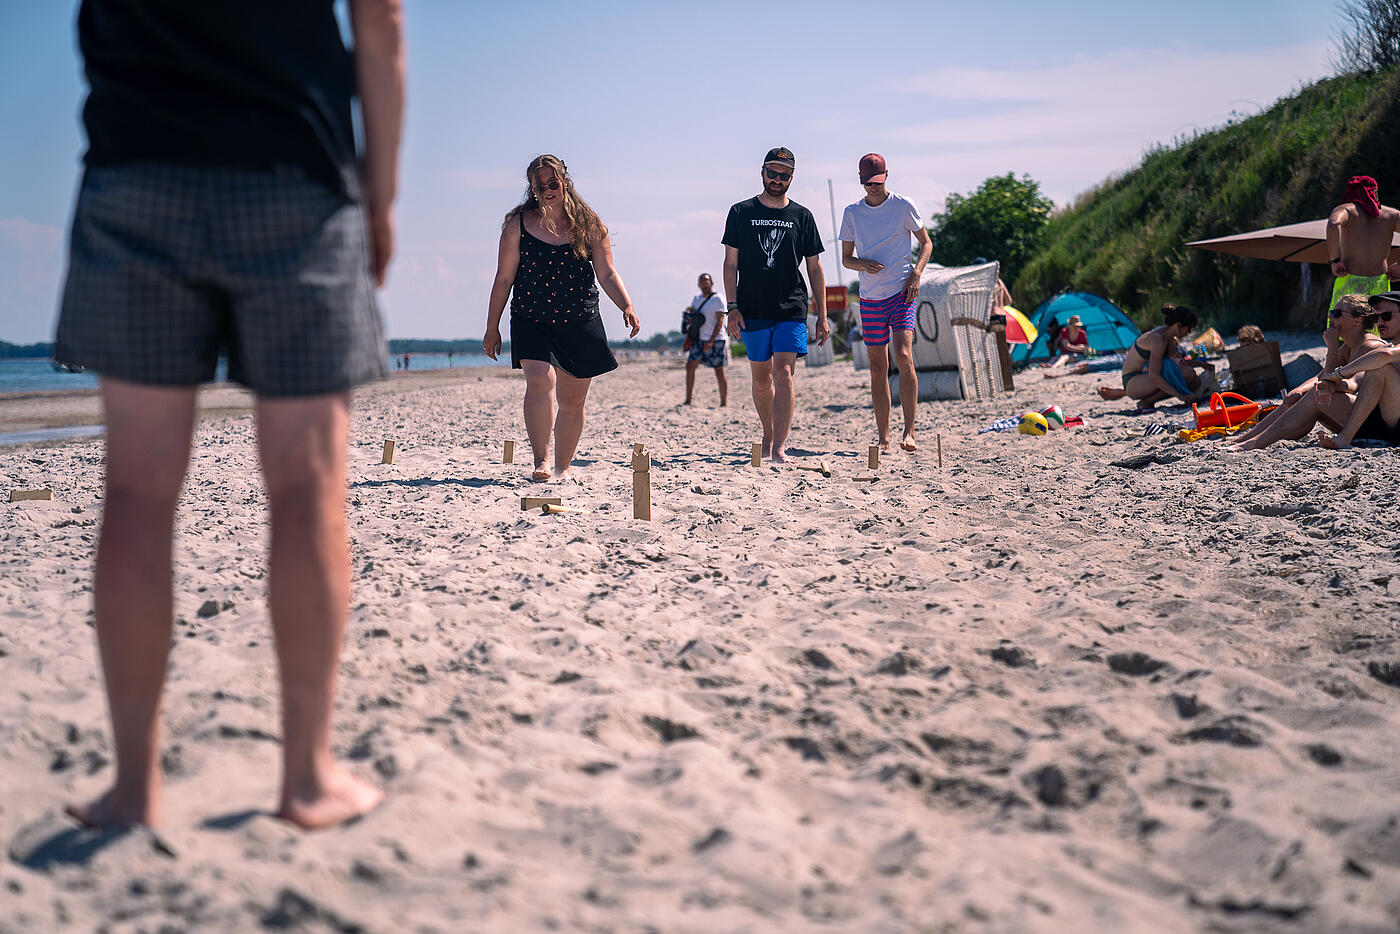 Mitarbeitende von visuellverstehen spielen am Strand Wikingerschach.